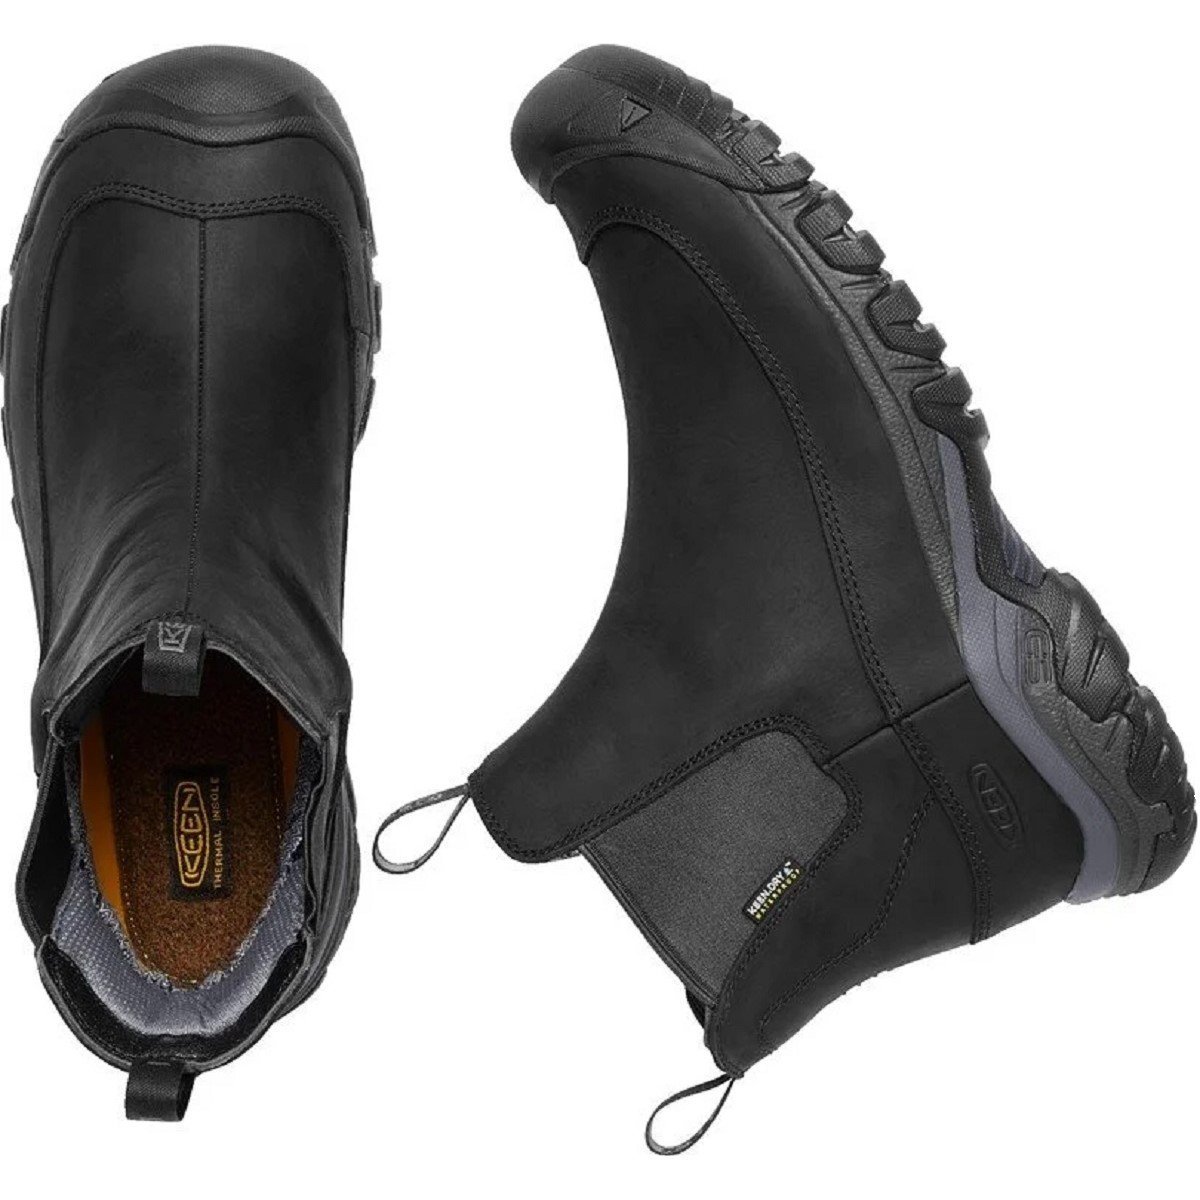 Взуття Keen Anchorage Boot III WP M - чорне / сіре